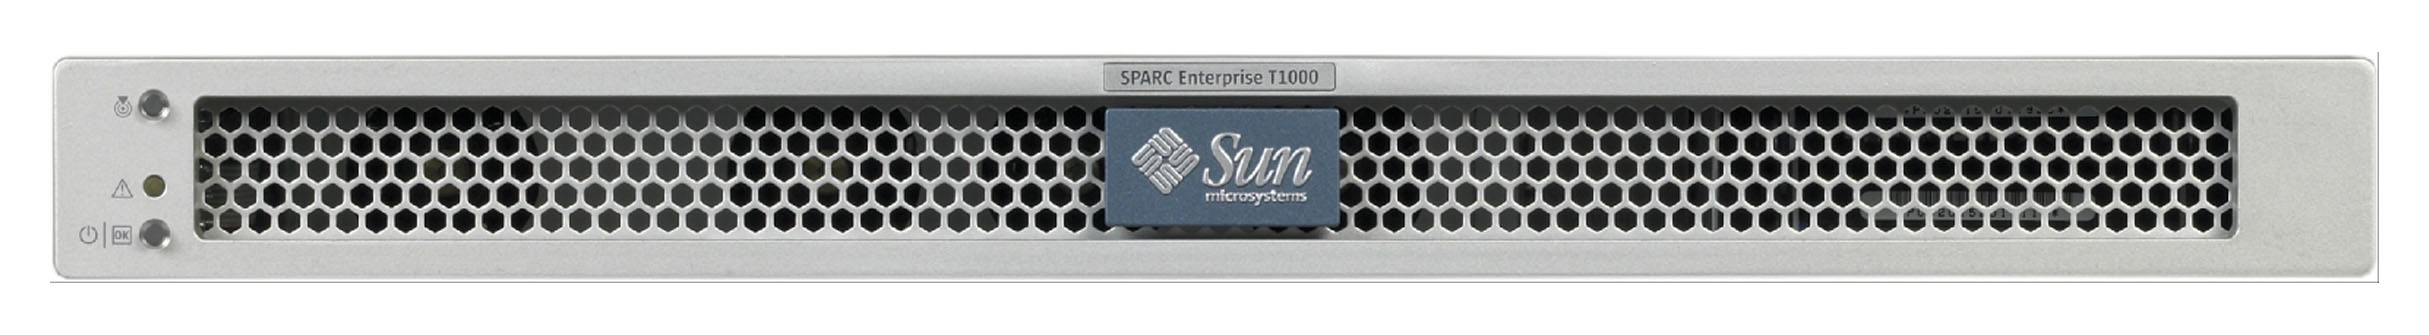 Sun SPARC Enterprise T1000, RoHS:YL Front Zoom